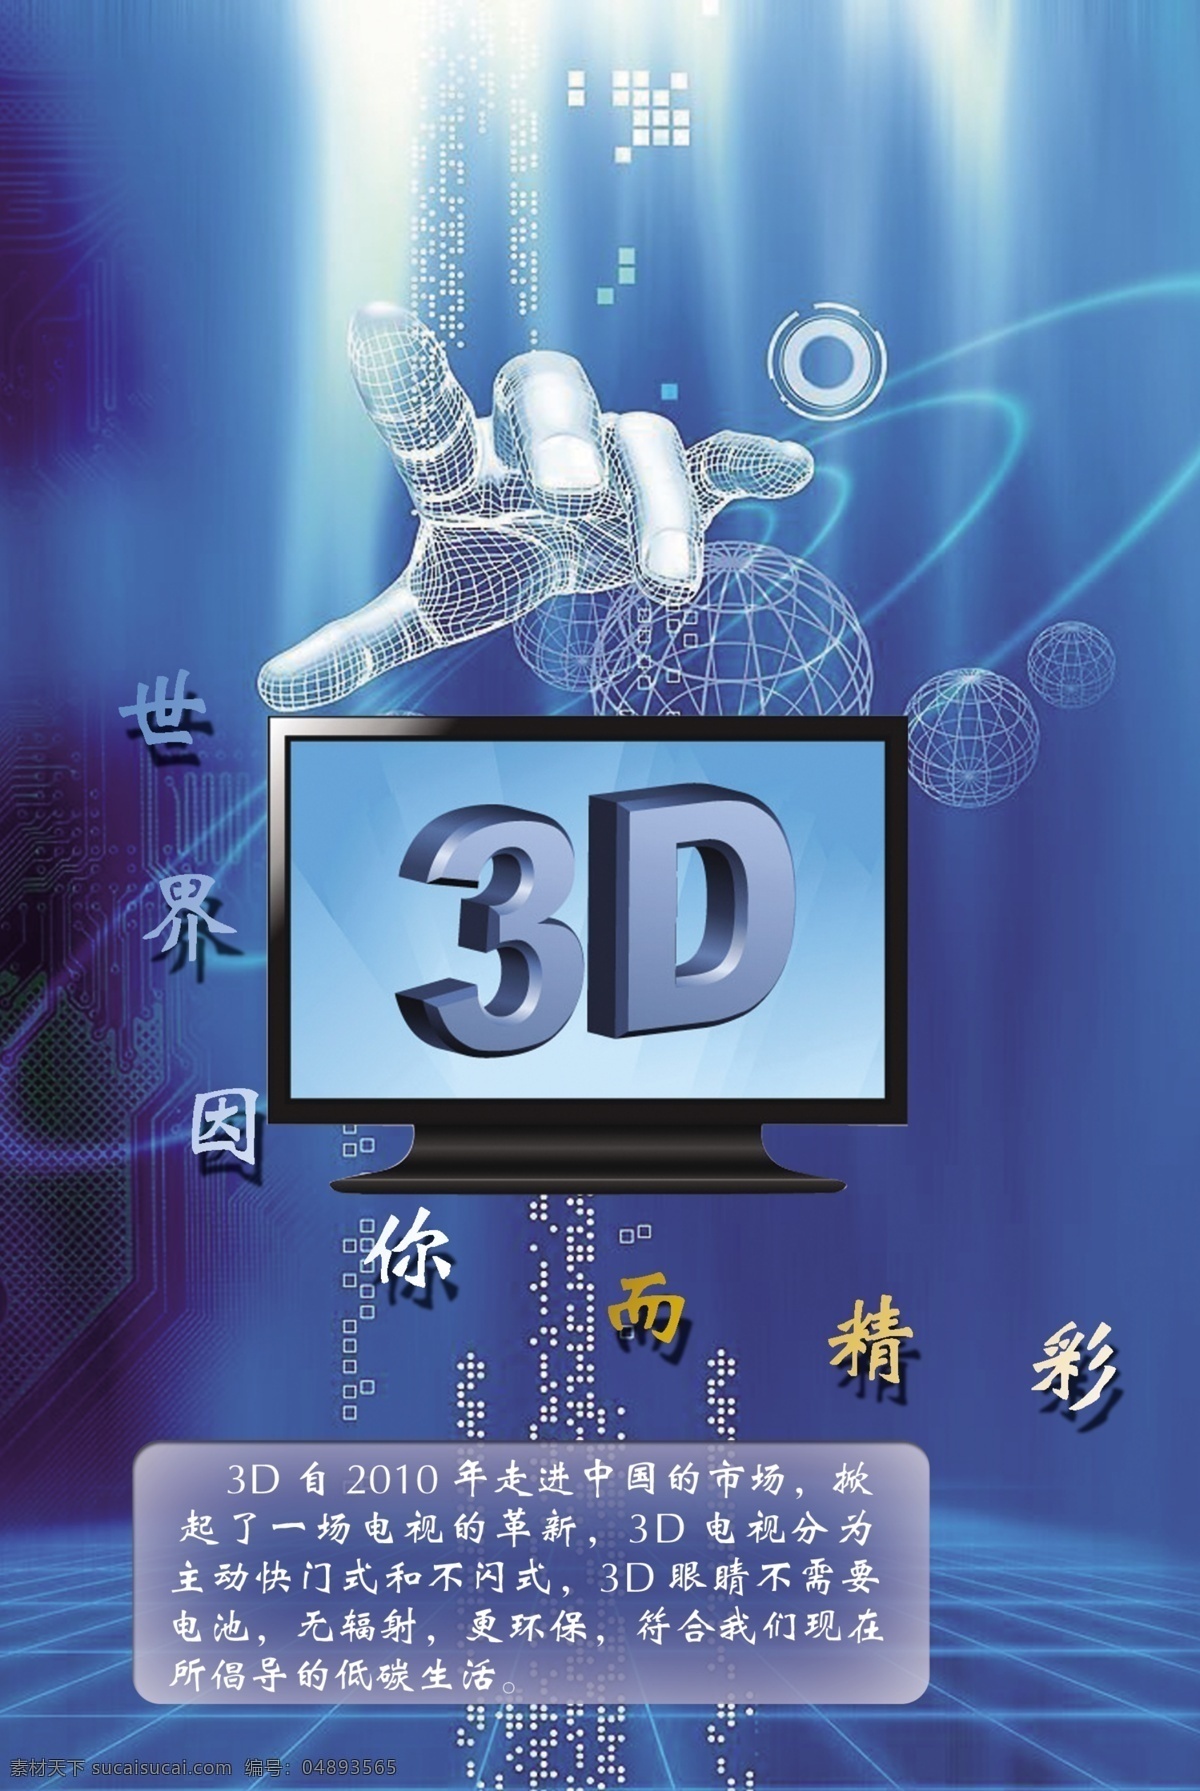 科技海报设计 3d 电视 绿色 科技 手指 广告设计模板 源文件